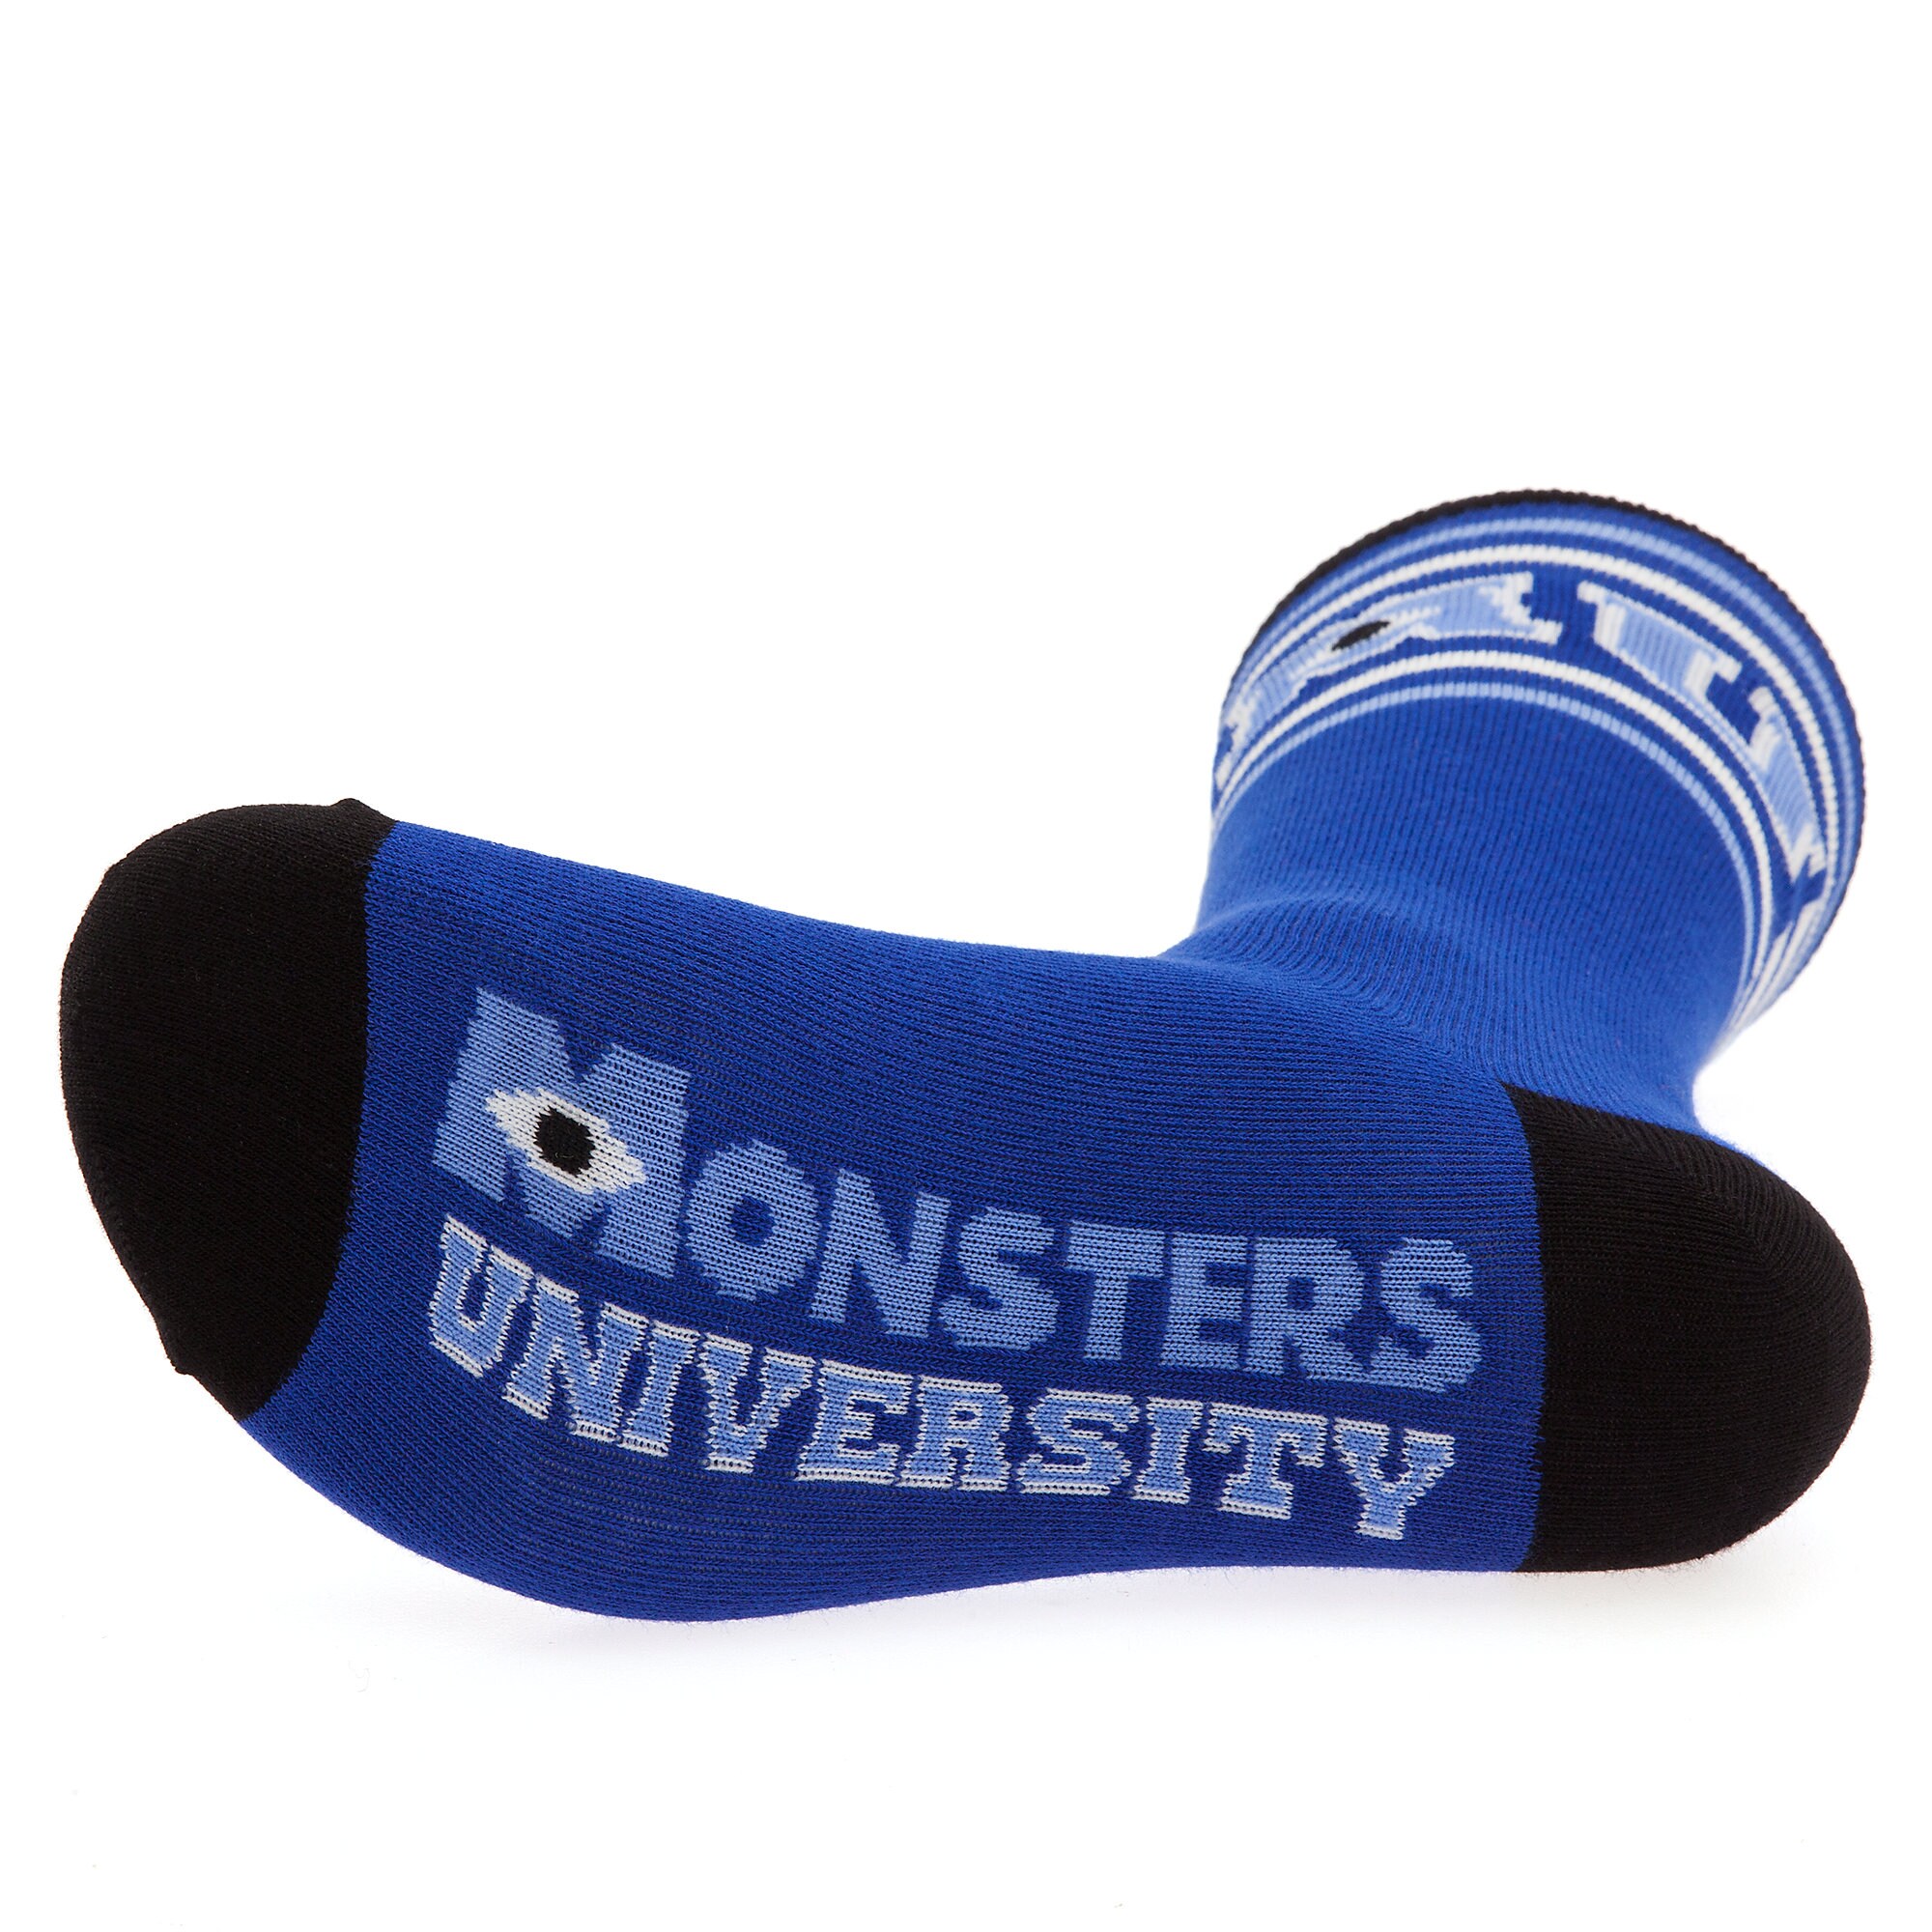 Monsters University Socks for Women